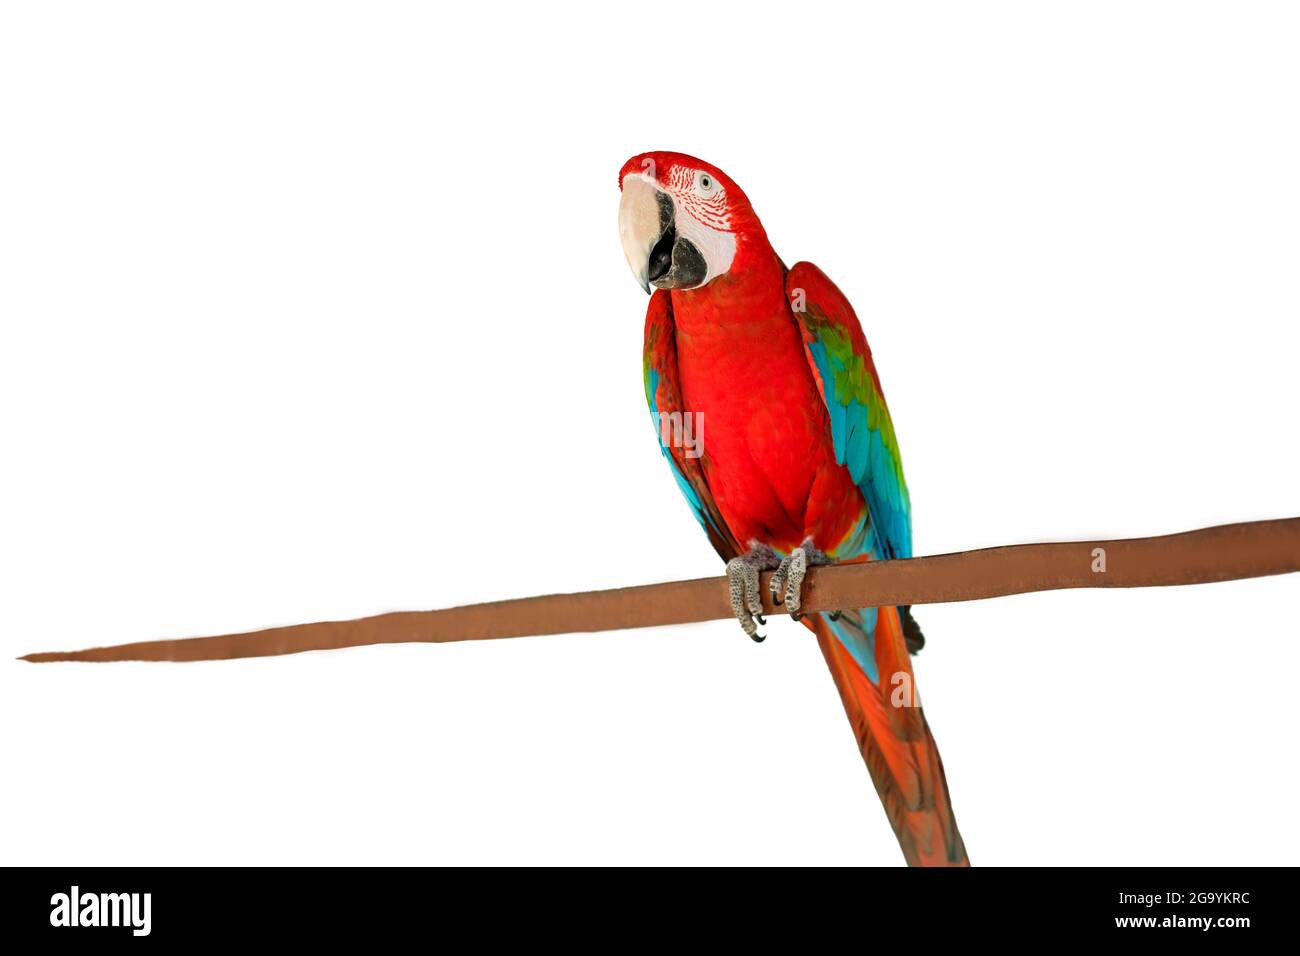 Arlequin macaw, magnifique perroquet hybride vert bleu et rouge avec d'excellentes plumes colorées de la tête à la queue isolées sur fond blanc. Bonjour Banque D'Images